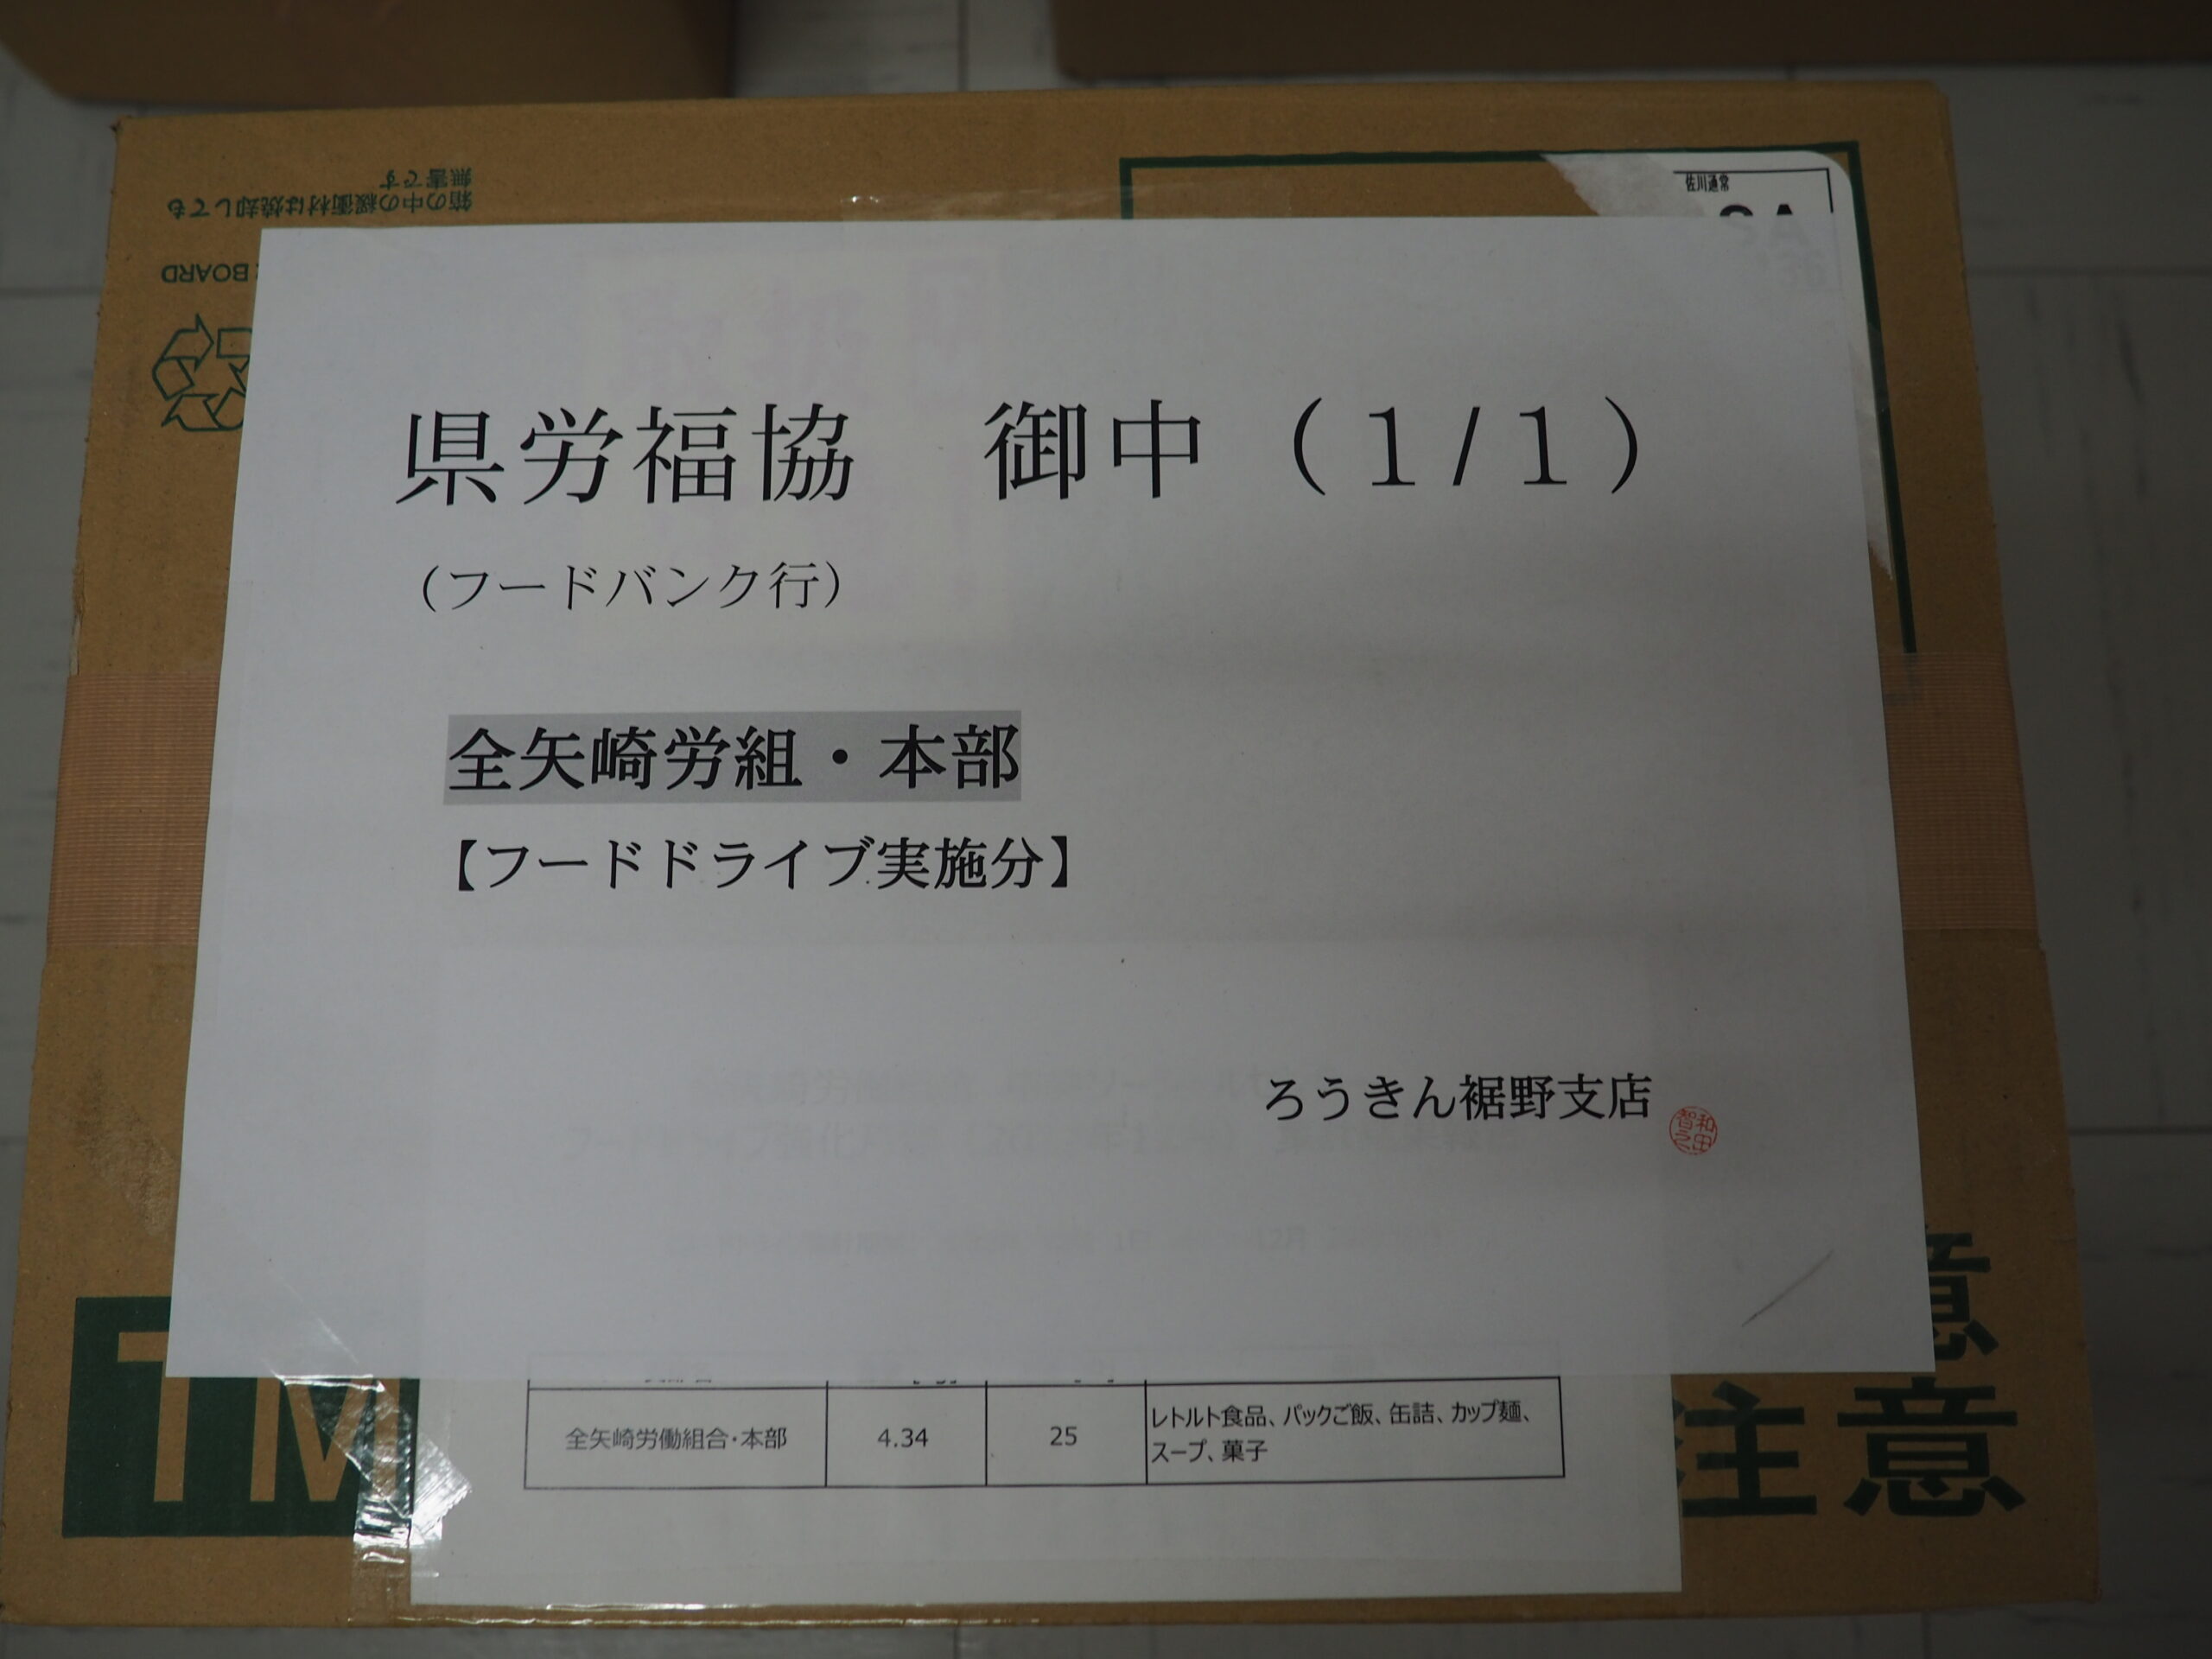 全矢崎労働組合本部様・全矢崎労働組合鷲津支部様から食品を提供いただきました。